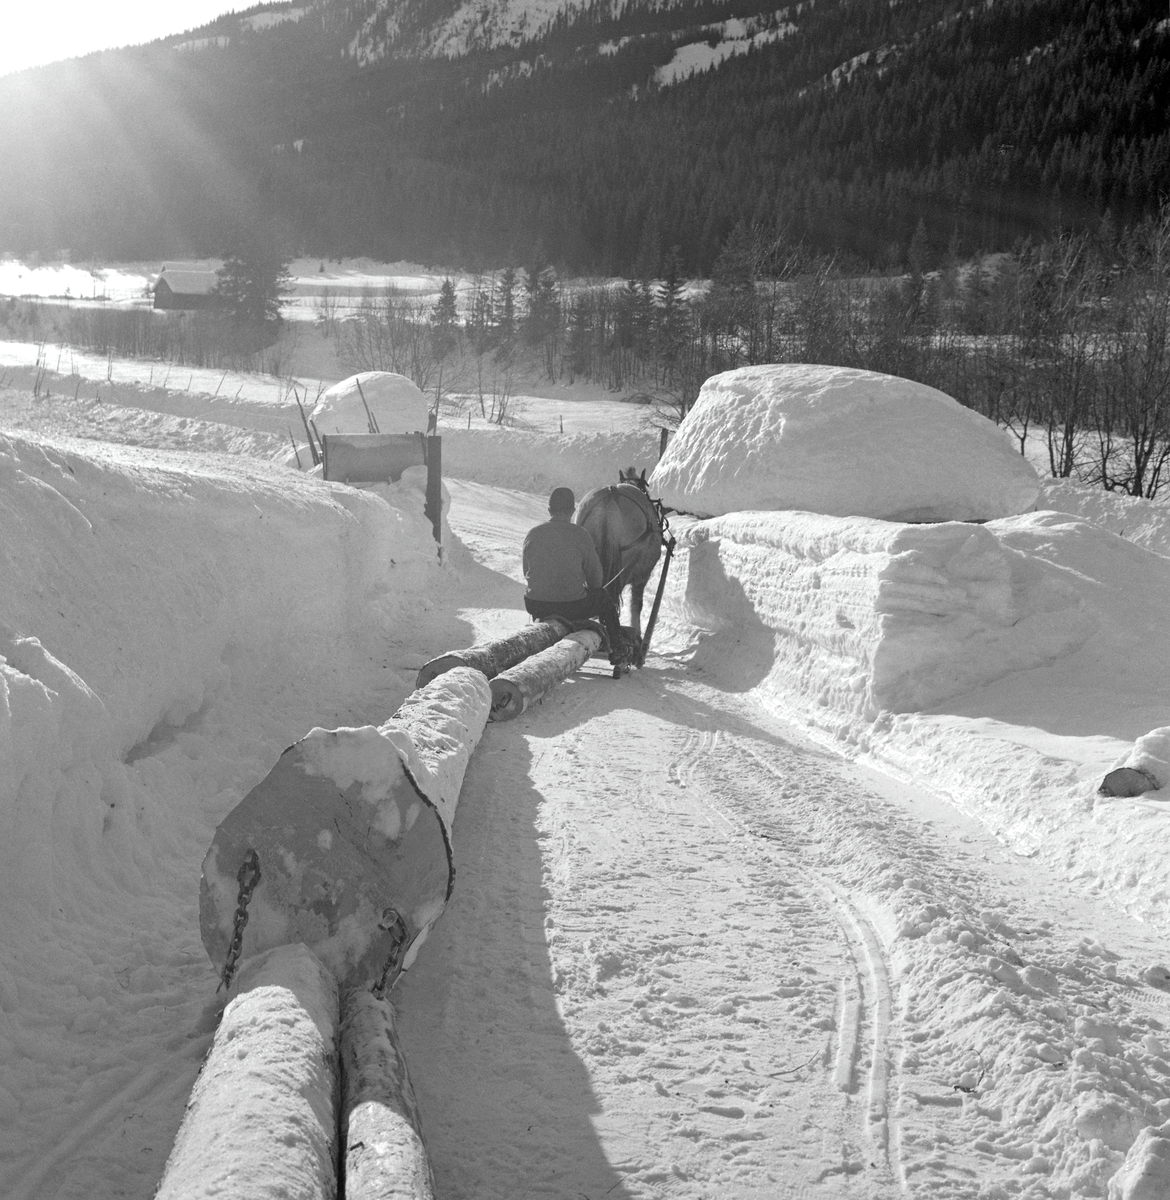 Hankekjøring av tømmer i Vestre Gausdal i mars 1967. Fotografiet er tatt idet kjørekaren Reidar Solberg og hesten hans hadde nådd endepunktet for den transportetappen de hadde ansvar for, en velteplass ved brøytet bilveg nede i dalbotnen. Bak hesten ser vi den fremste delen av hankevendinga, barket tømmer som var kjedet parvis sammen for å kunne slepes bak en stutting. Høyere oppe i lia foregikk hankekjøringa  på en enkel veg som tømmerkjøreren hadde måkt og tråkket i et terreng der det ennå ikke var særlig mange skogsbilveger. Ei normalvending under hankekjøring i det bratte terrenget i Vestre Gausdal var på om lag tre tylfter (36 stokker), men under gode forhold skal det ha vært kjørt vendinger på oppimot 100 stokker. Hvor mye tømmer som fantes i den vendinga som er avbildet her vet vi ikke eksakt. I dette tilfellet vet vi imidlertid at det var tre kilometers kjøreveg. Når strekningen var såpass lang rakk tømmerkjørerne bare to vendinger om dagen i den mørkeste tida (desember-januar). Dette fotografiet ble tatt i mars 1967, da Kjell Søgård og Tore Fossum fra Norsk Skogbruksmuseum var i Vestre Gausdal for å gjøre opptak til en kulturhistorisk dokumentasjonsfilm om tømmerkjøringstradisjonene i bygda. I kommentarene til filmen sier gausdølen Nils Bjørge følgende: «Under hankekjøring lyt det væra godt samspell mellom hæst og kar, ska’ vendinga gå godt. Enkelte øykje lære konsta bæ’re ell andre. Døm tek hardt ti før å få løyst vendinga i starta, og så legg døm seg kraftig ti sæla’n der det er flate og tunge strekninger.»